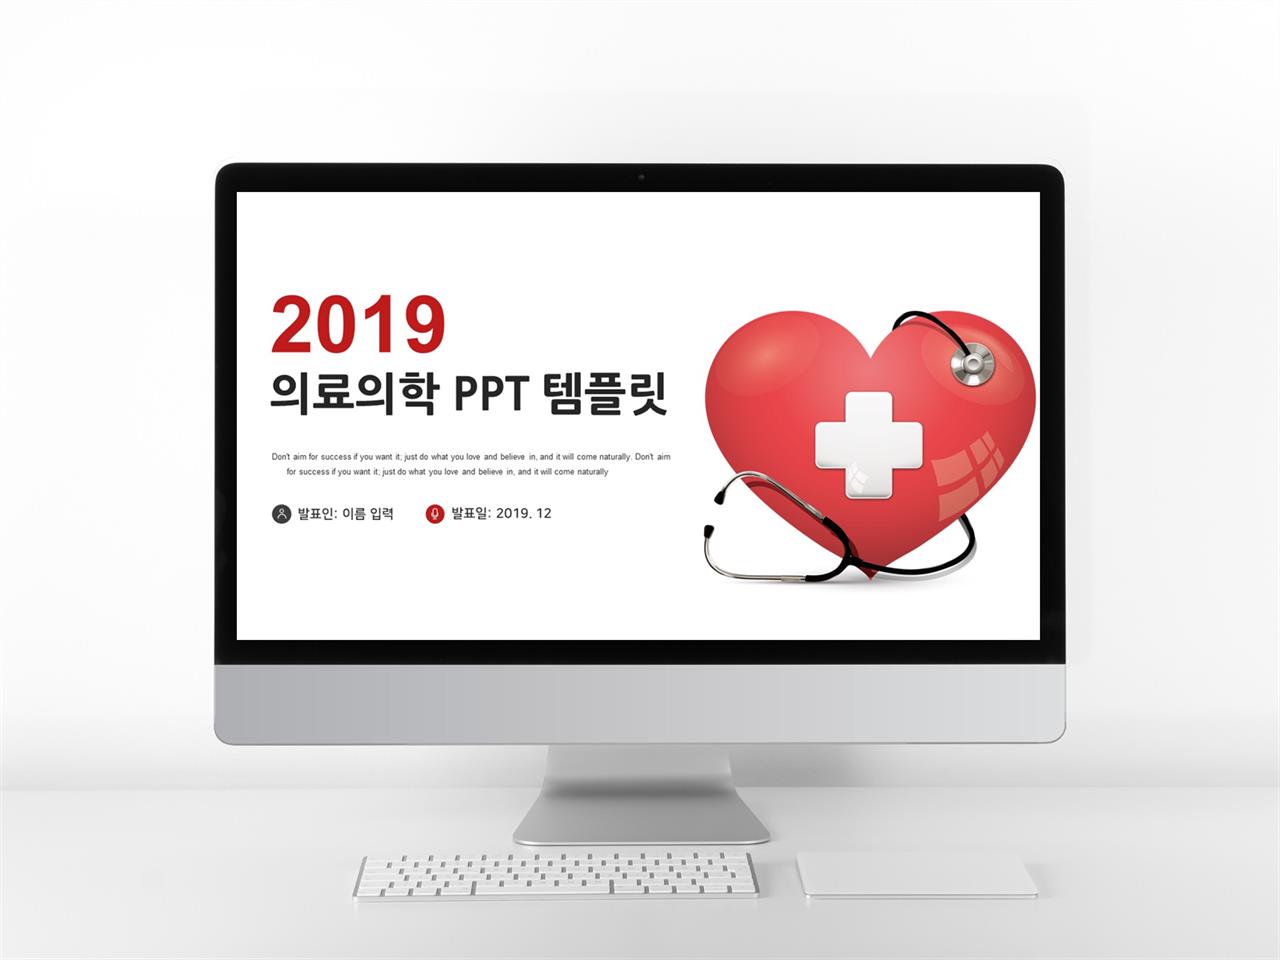 병원마케팅 빨간색 정결한 프로급 피피티테마 사이트 미리보기